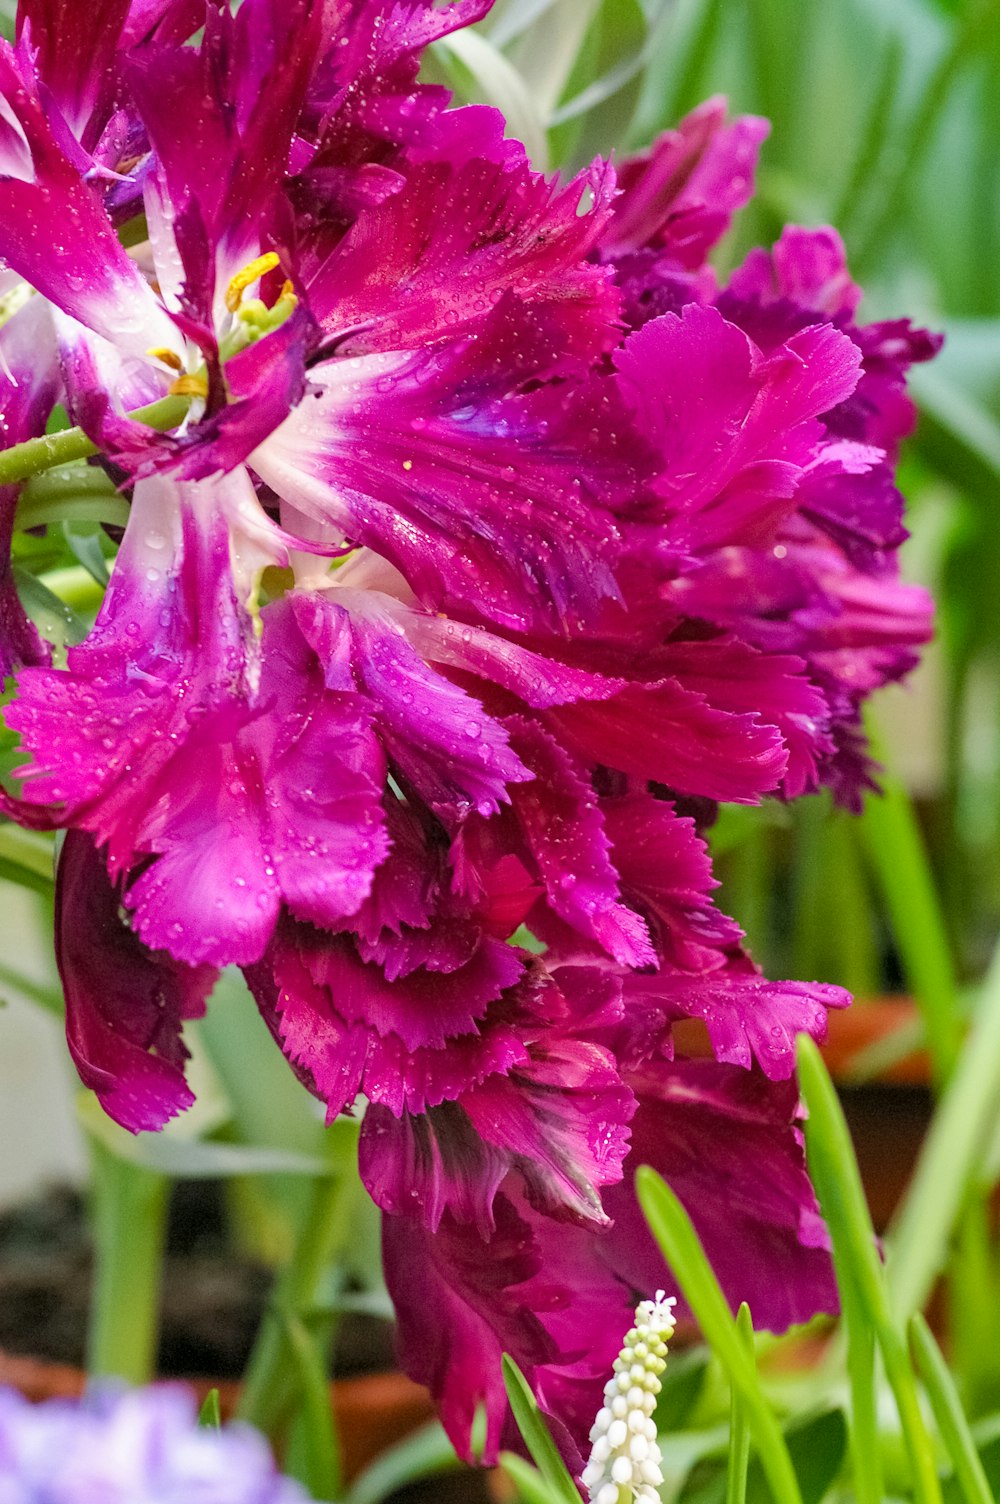 Nahaufnahme einer lila Blume mit Wassertropfen darauf